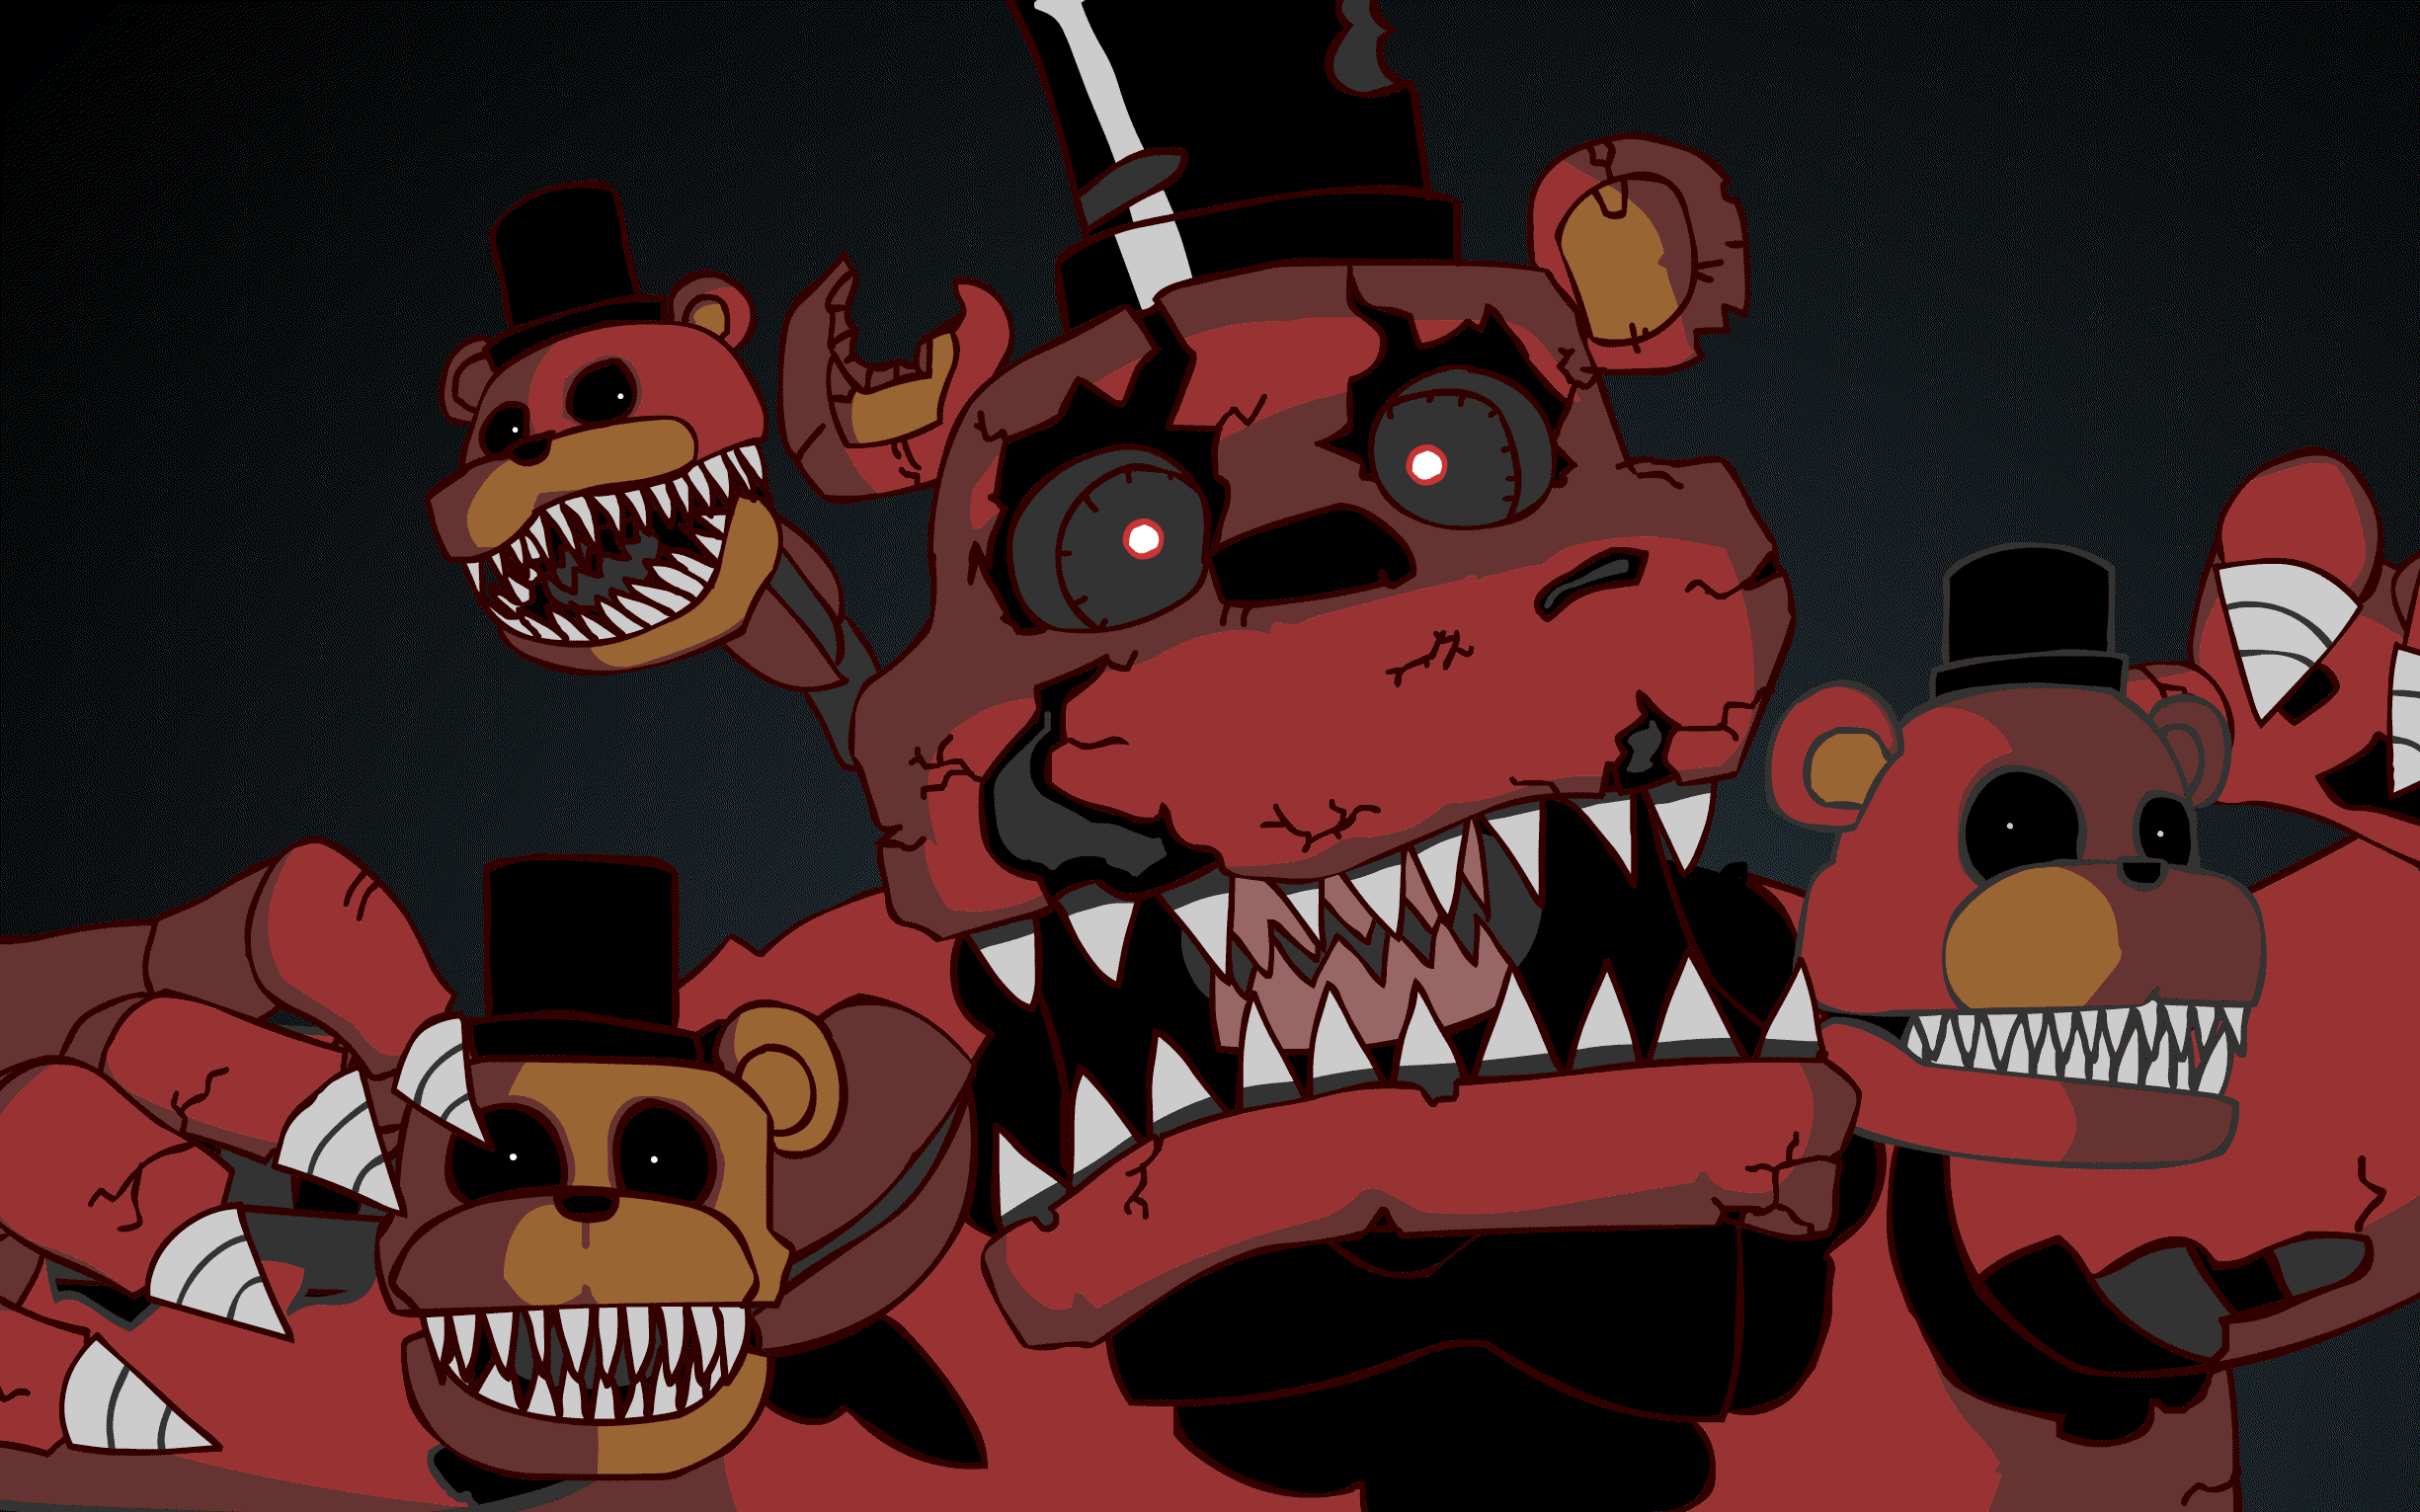 Nightmare Freddy  Fnaf jumpscares, Nightmare, Freddy